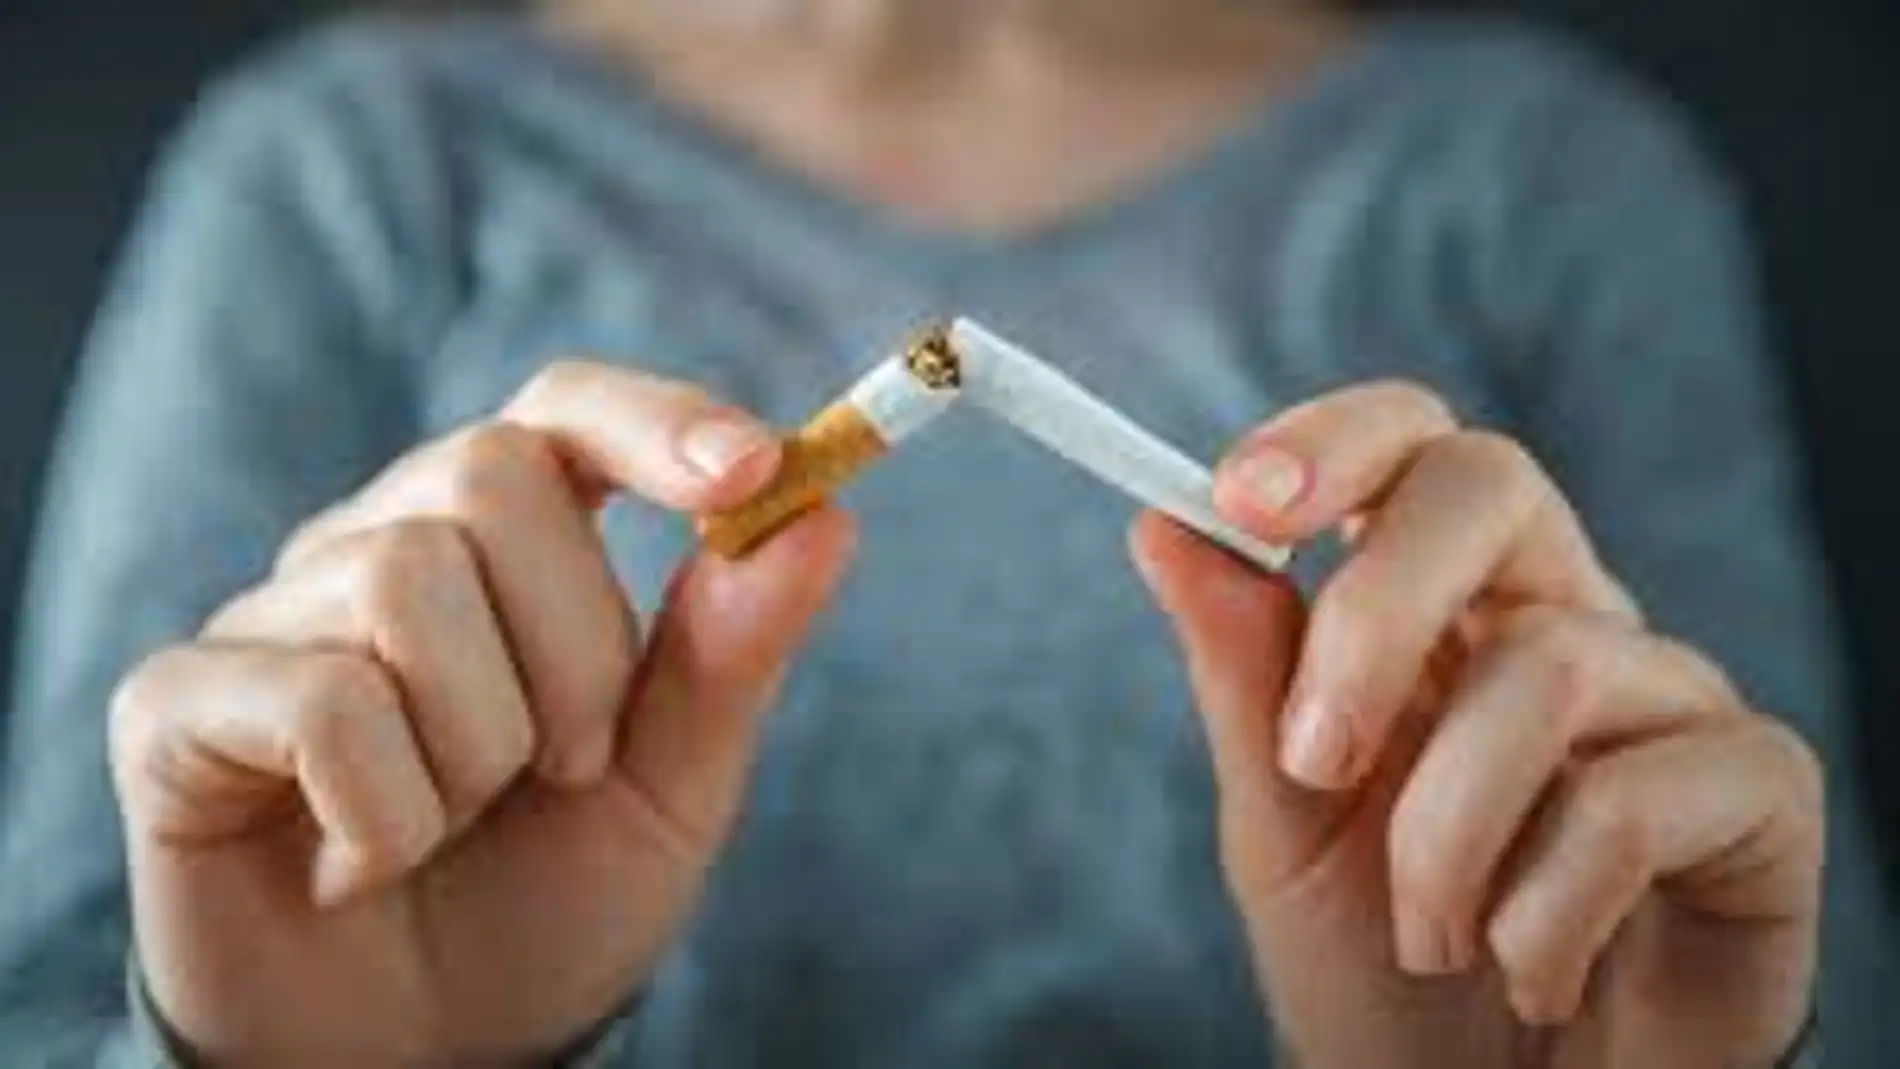 La Asociación contra el Cáncer de Badajoz inicia en octubre cursos para dejar de fumar en modalidad online y presencial